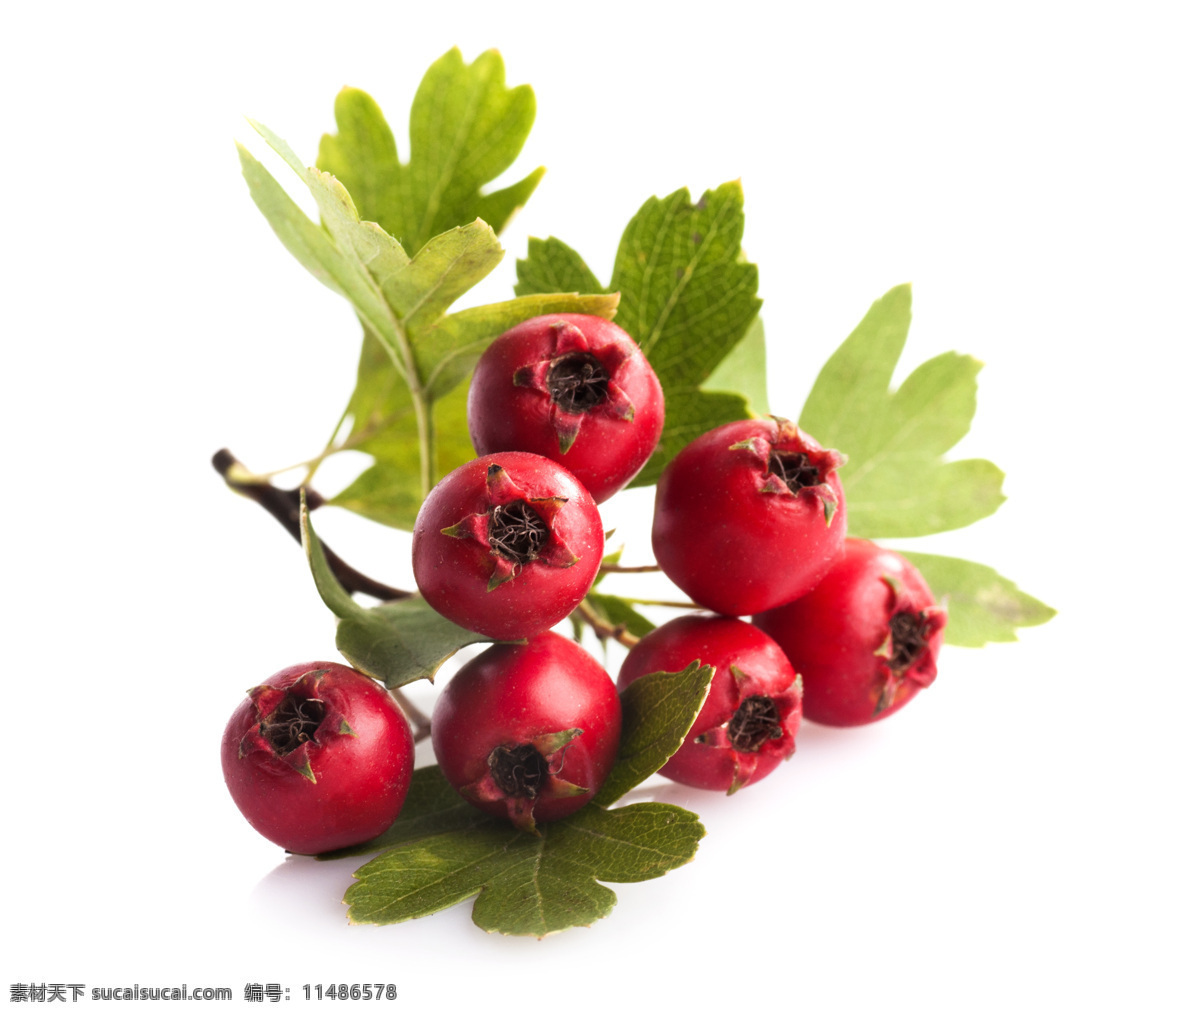 山楂枝叶图片 红果 山楂 草本 健康 绿色 莓果 美容 食材 水果 美食 中药材 叶子 生物世界